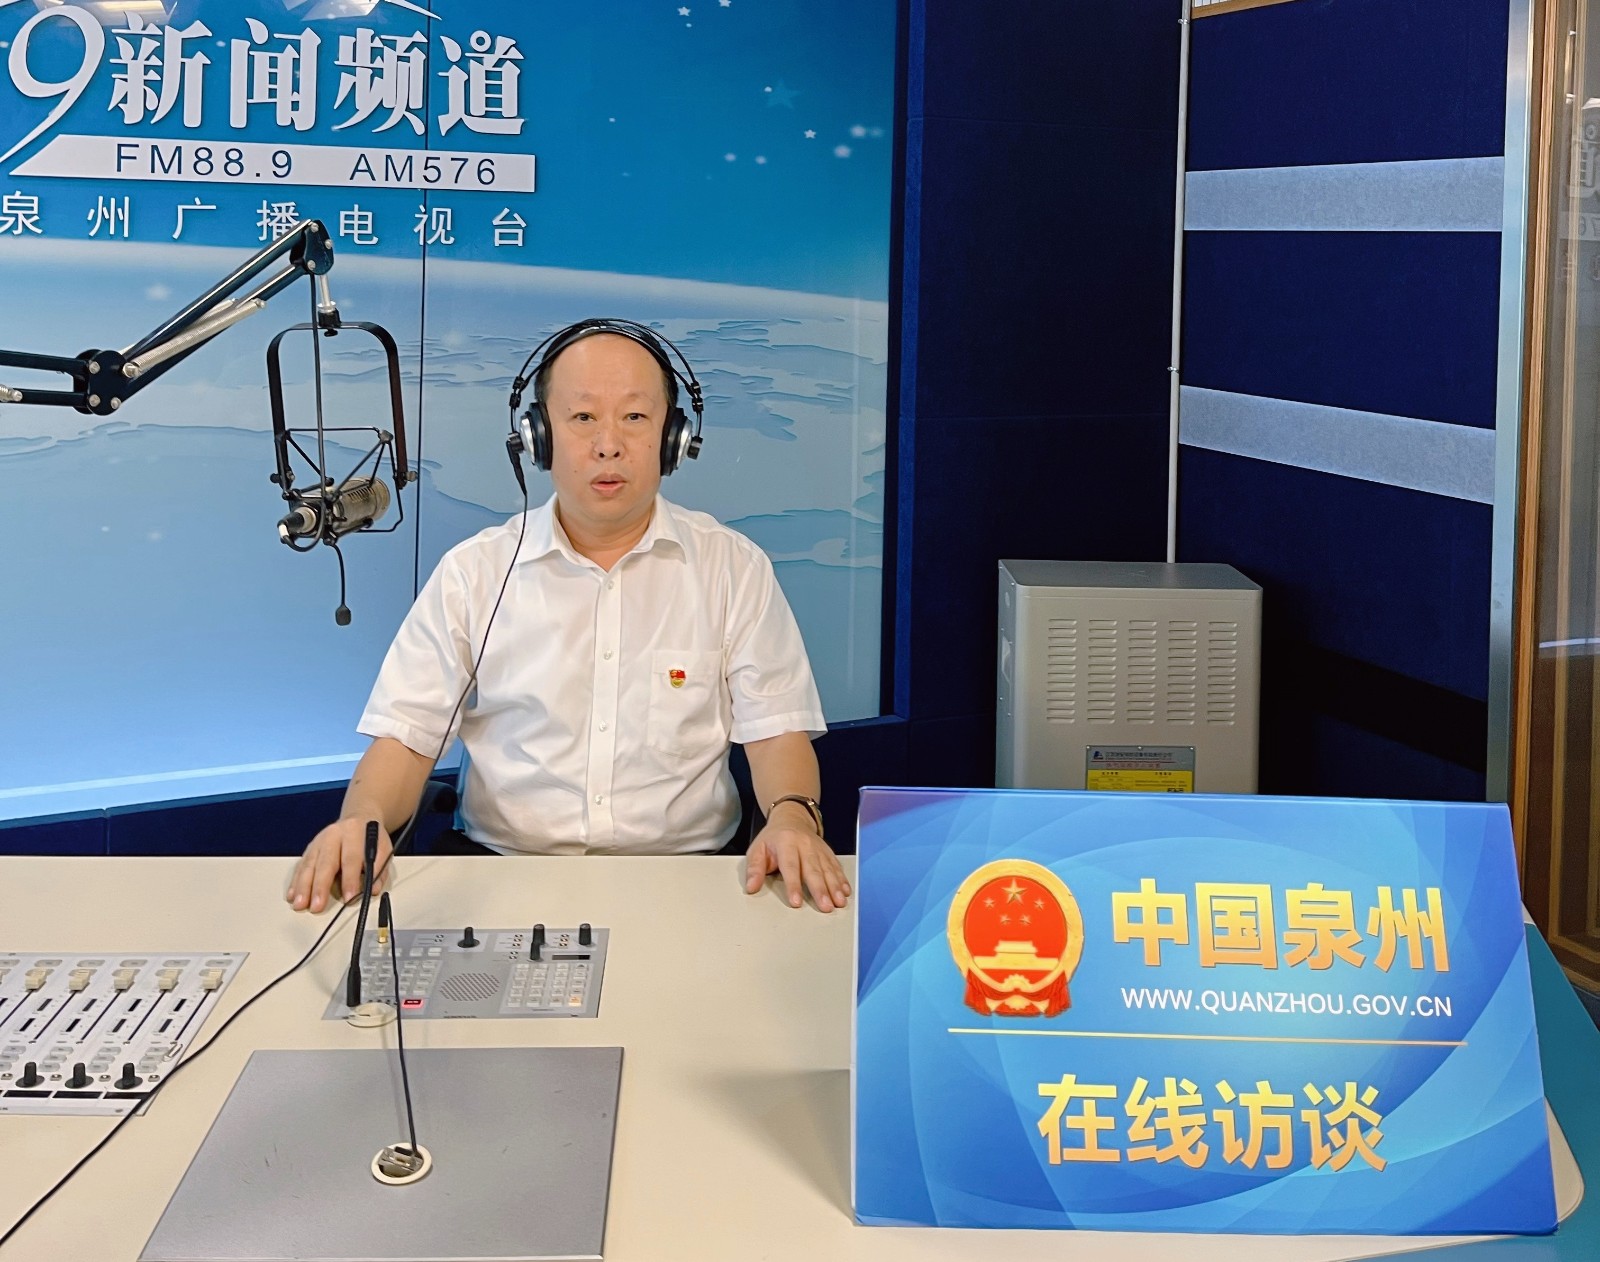 2022年9月29日中国电信泉州分公司上线泉州广播电视台《在线访谈》直播间